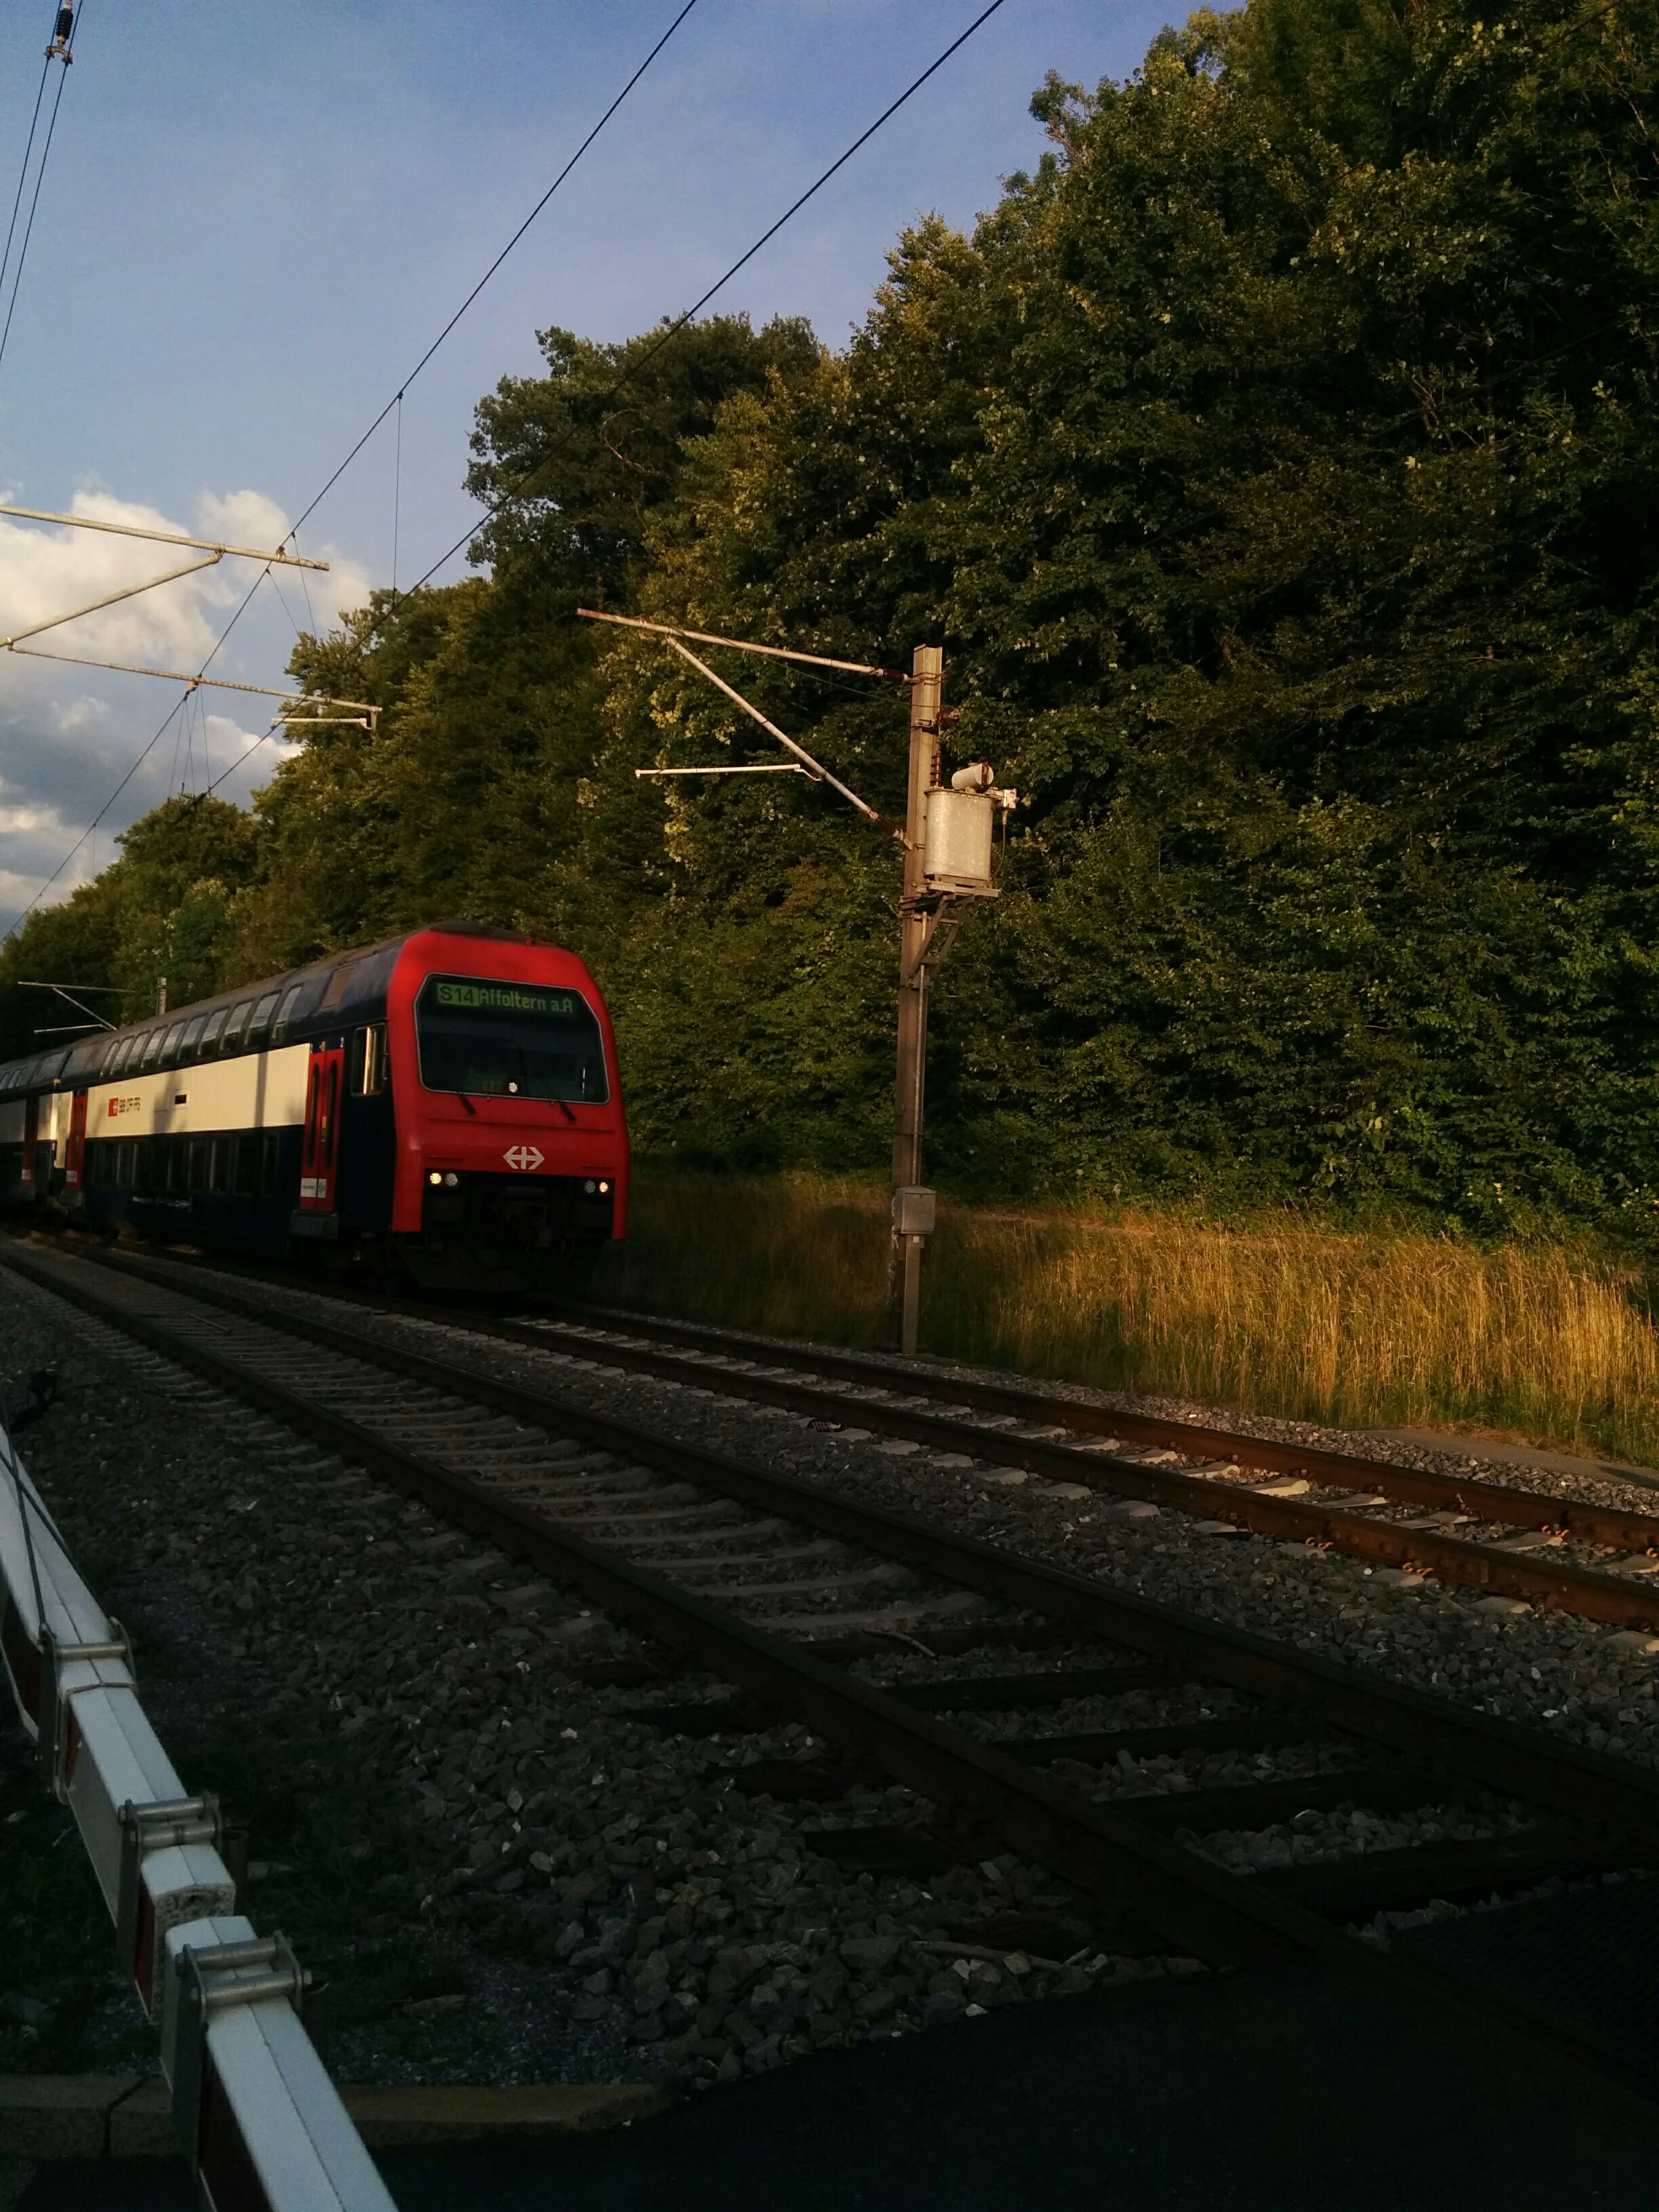 Classic Swiss train.